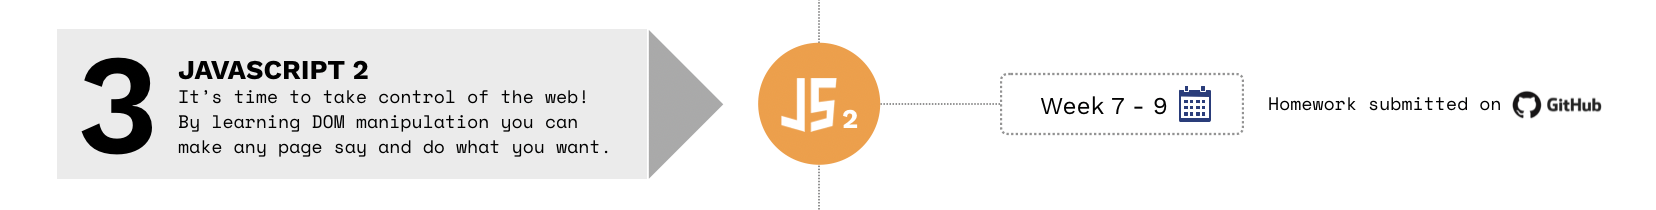 JavaScript2